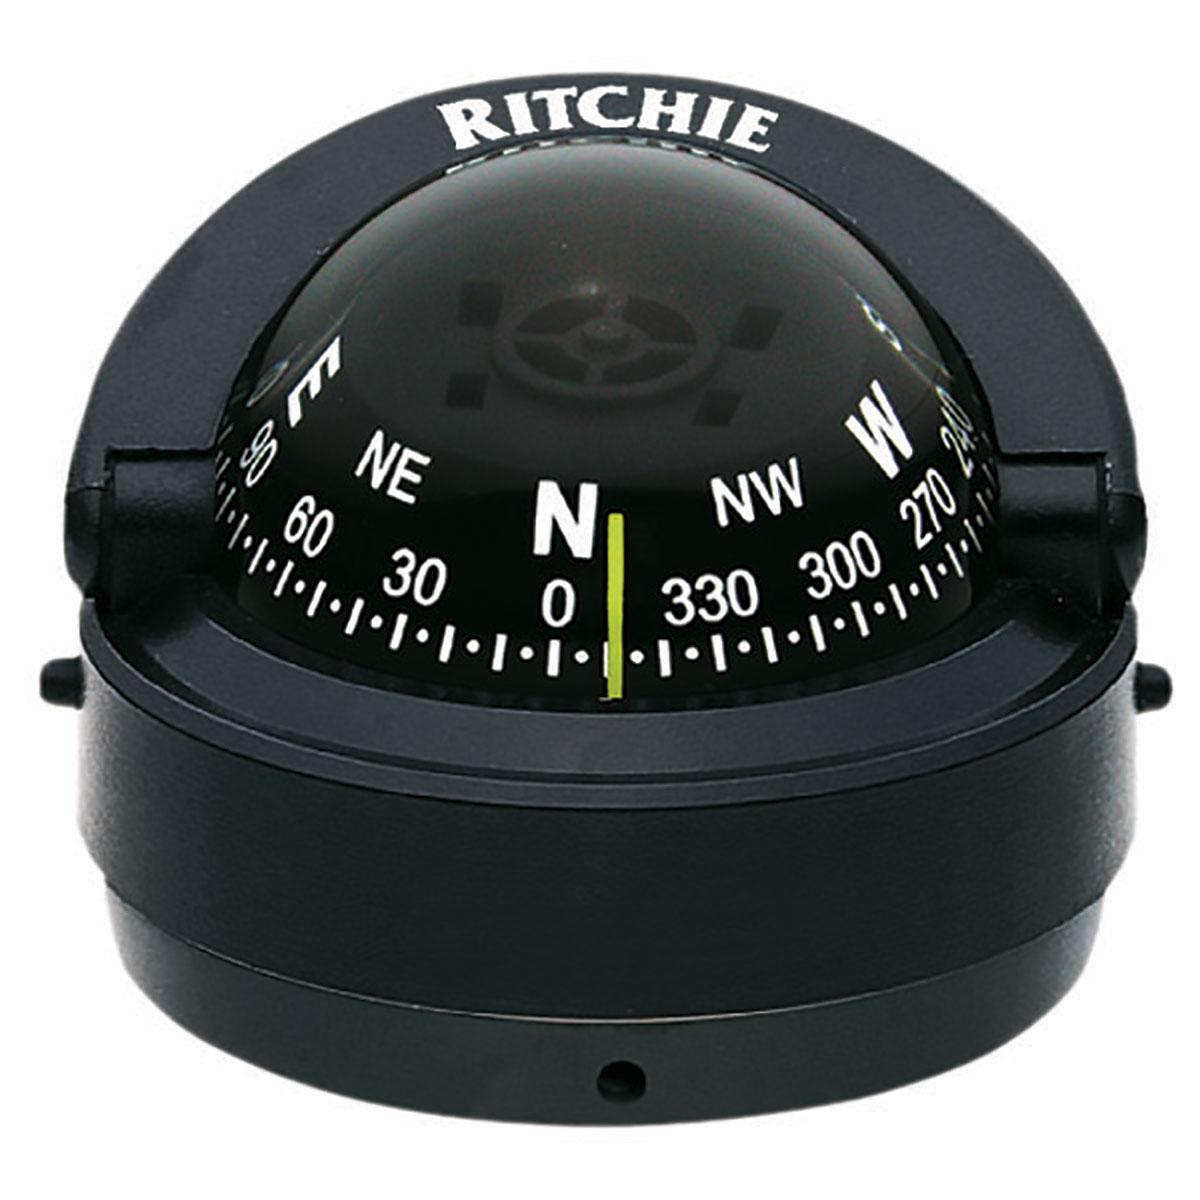 Компас Ritchie Navigation Explorer S-53 картушка 70мм 12В 100x73мм настольный с конической картушкой чёрный